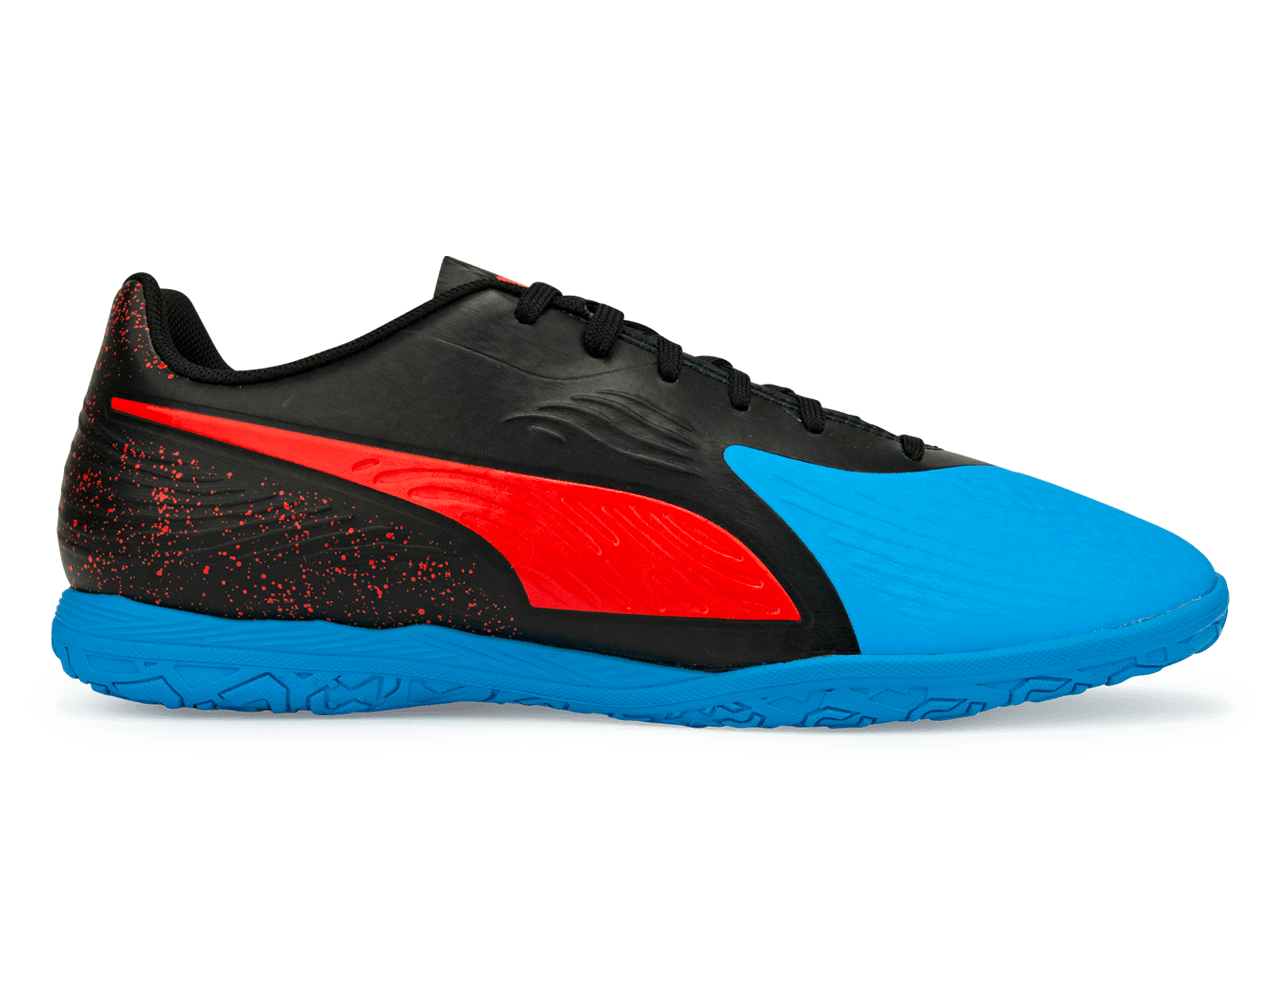 PUMA Men's One 19.4 Indoor Soccer Shoes  Bleu Azur/Red Blast/Black